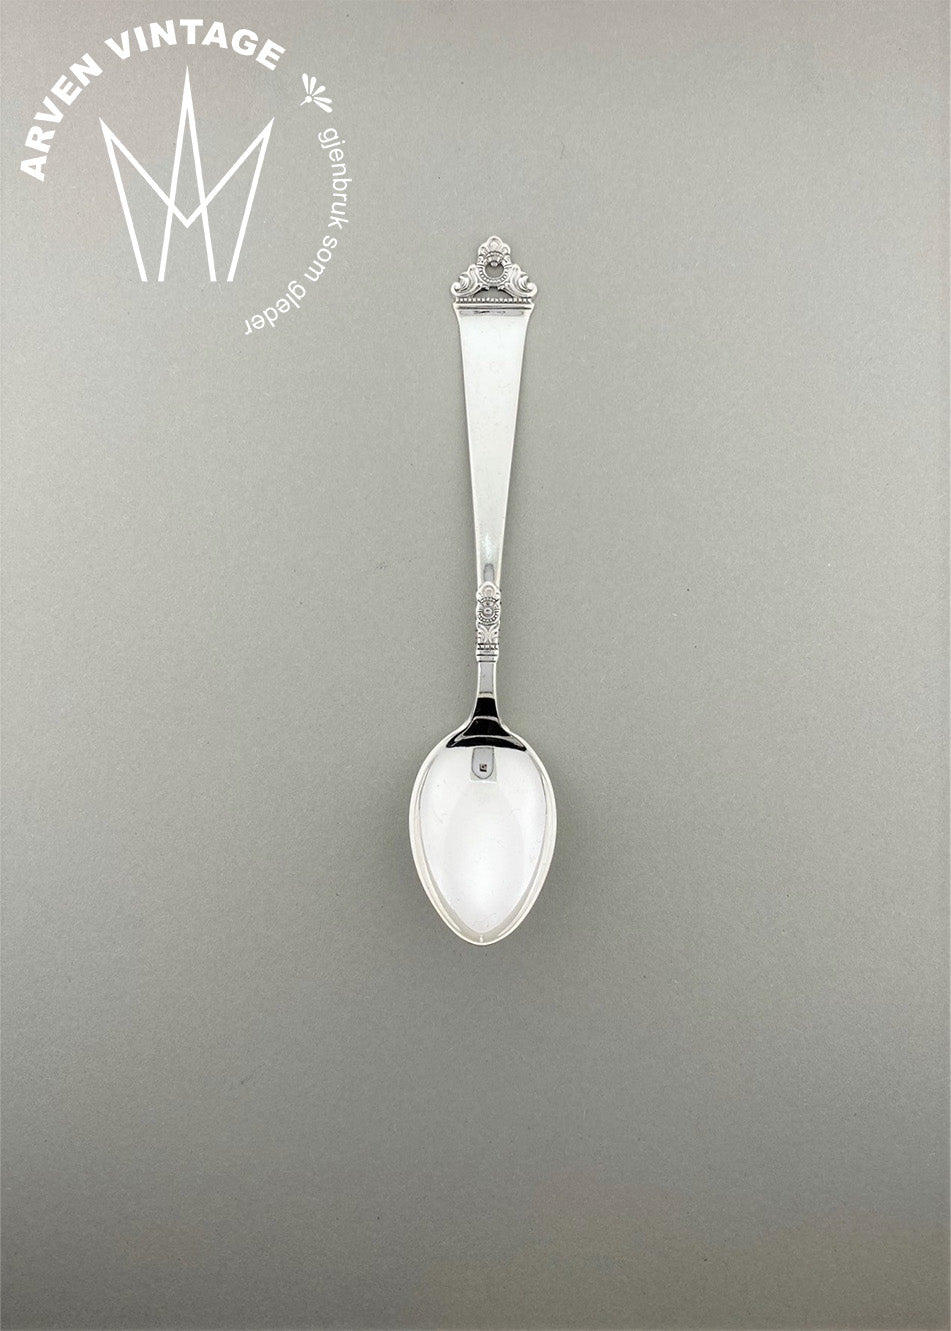 Vintage Odel teaspoon